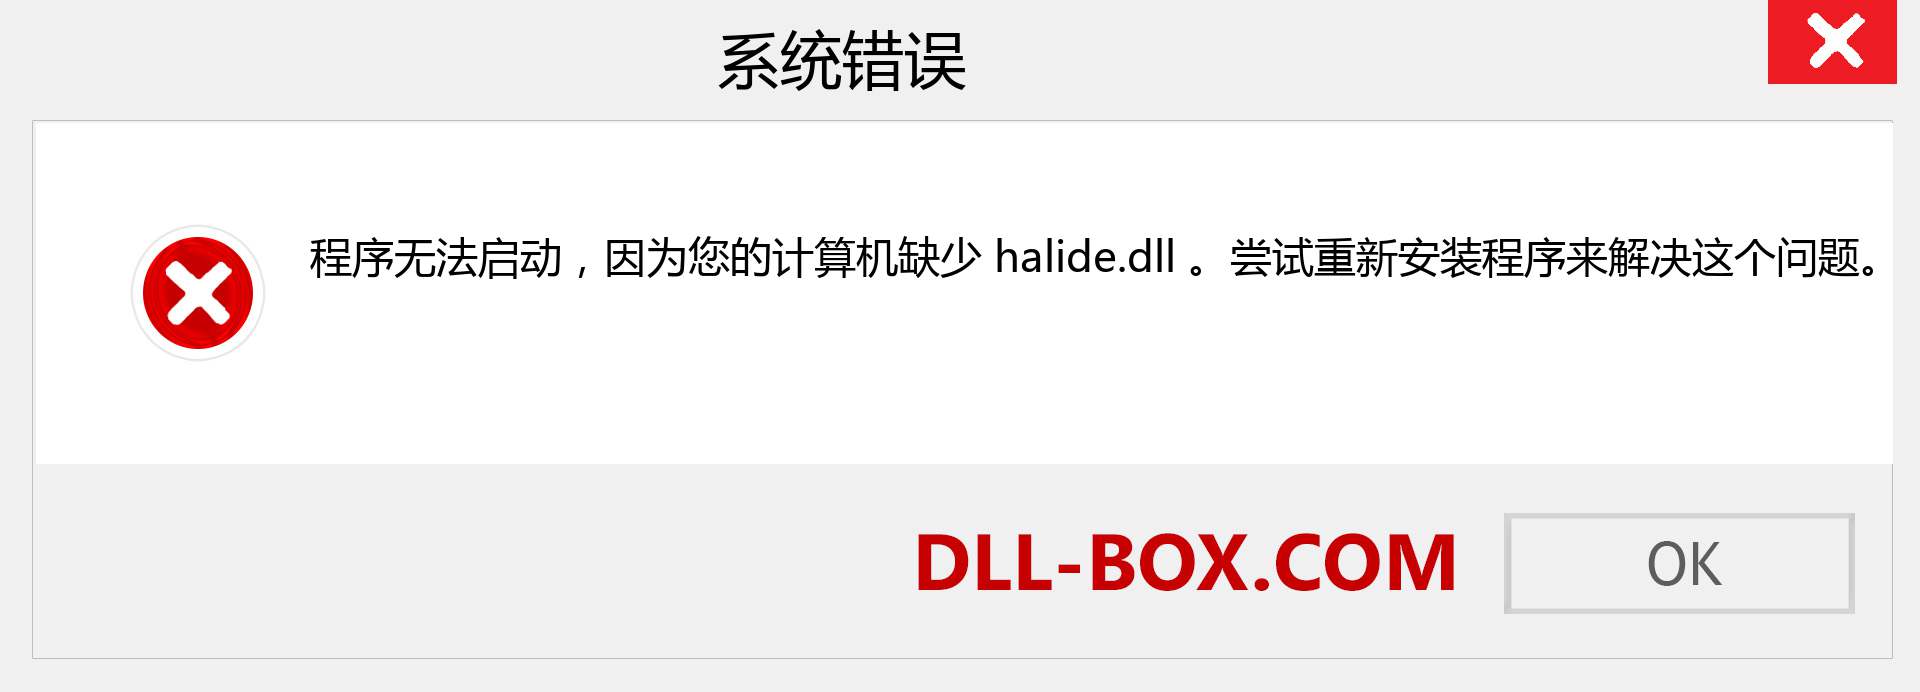 halide.dll 文件丢失？。 适用于 Windows 7、8、10 的下载 - 修复 Windows、照片、图像上的 halide dll 丢失错误